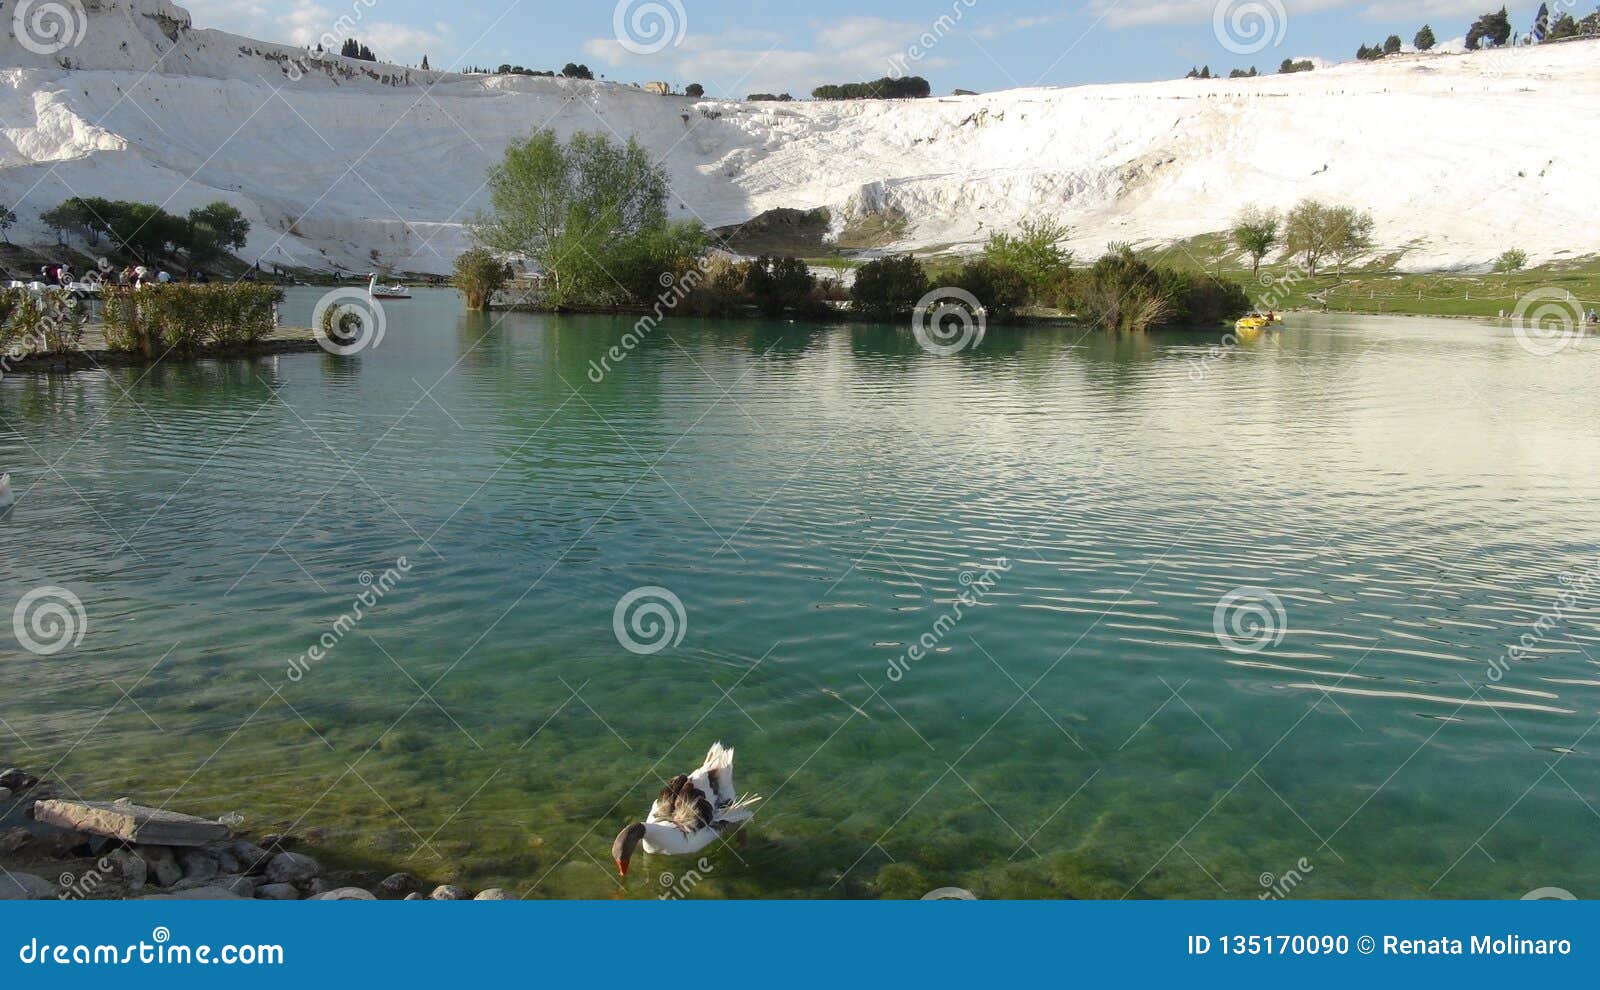 stunning lake in pamukkale, turkey